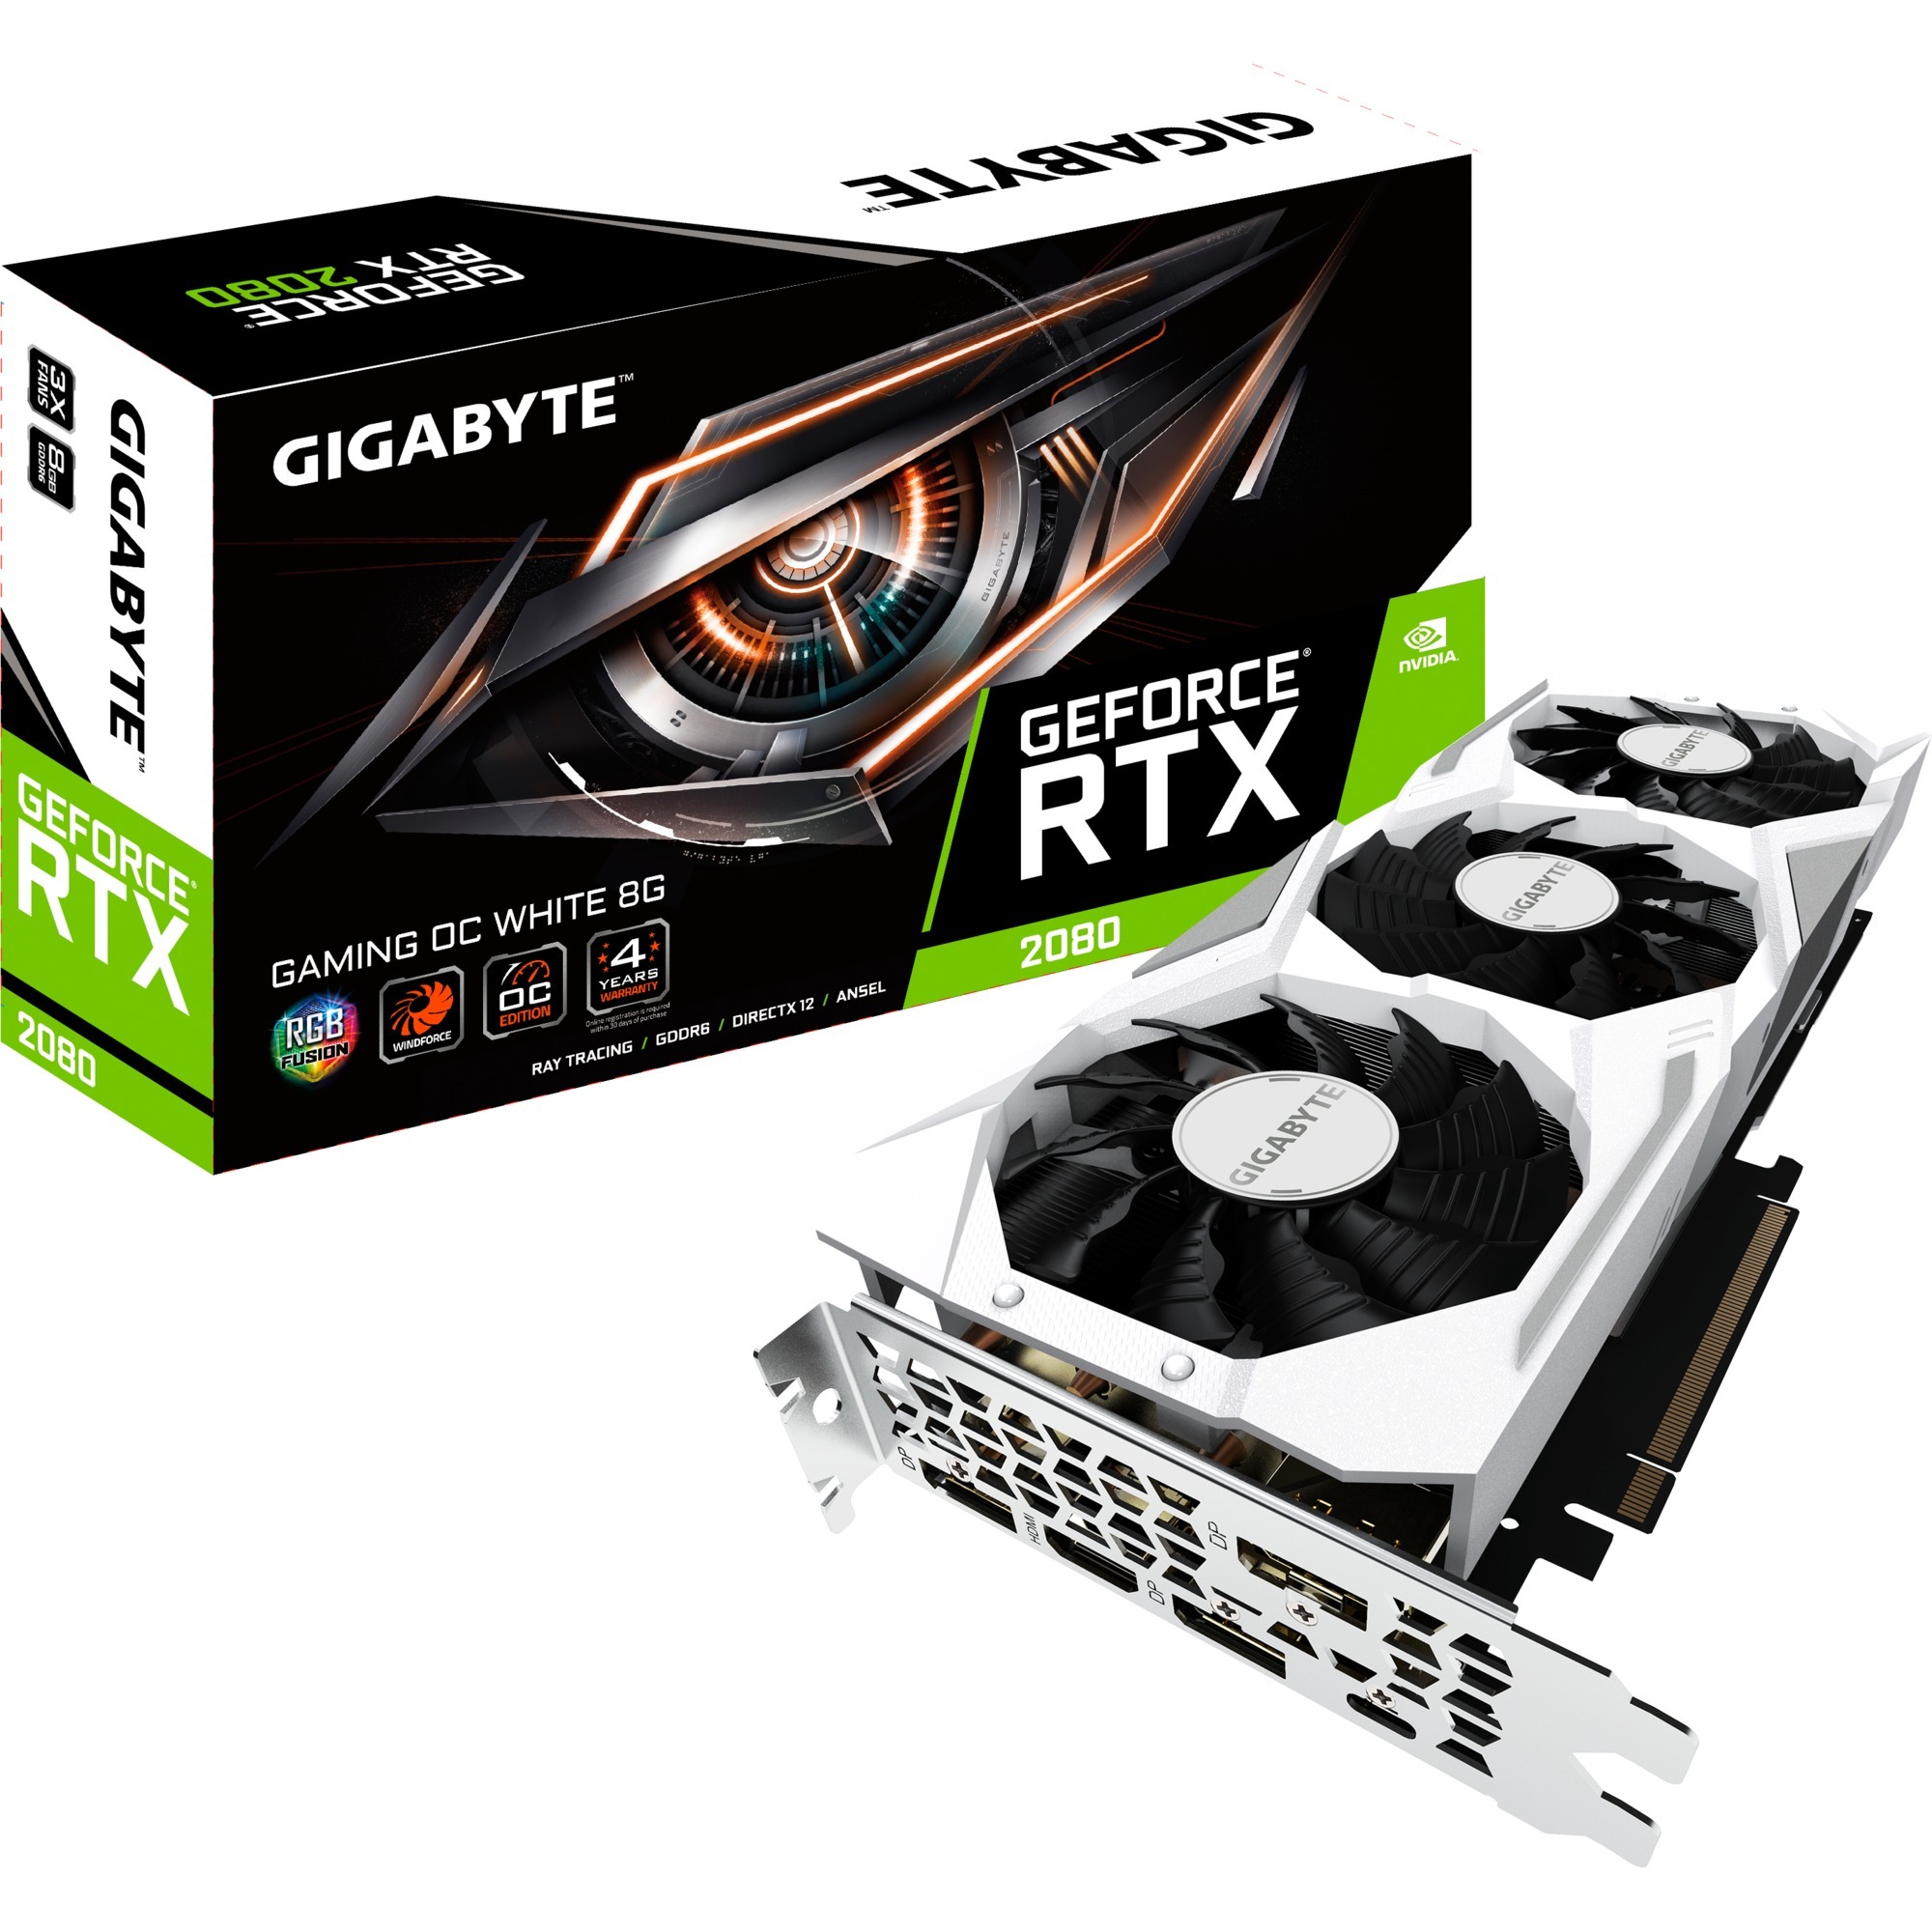 GeForce RTX 2080 GAMING OC WHITE 8GB GeForce RTX 2070 GDDR6, Karta graficzna